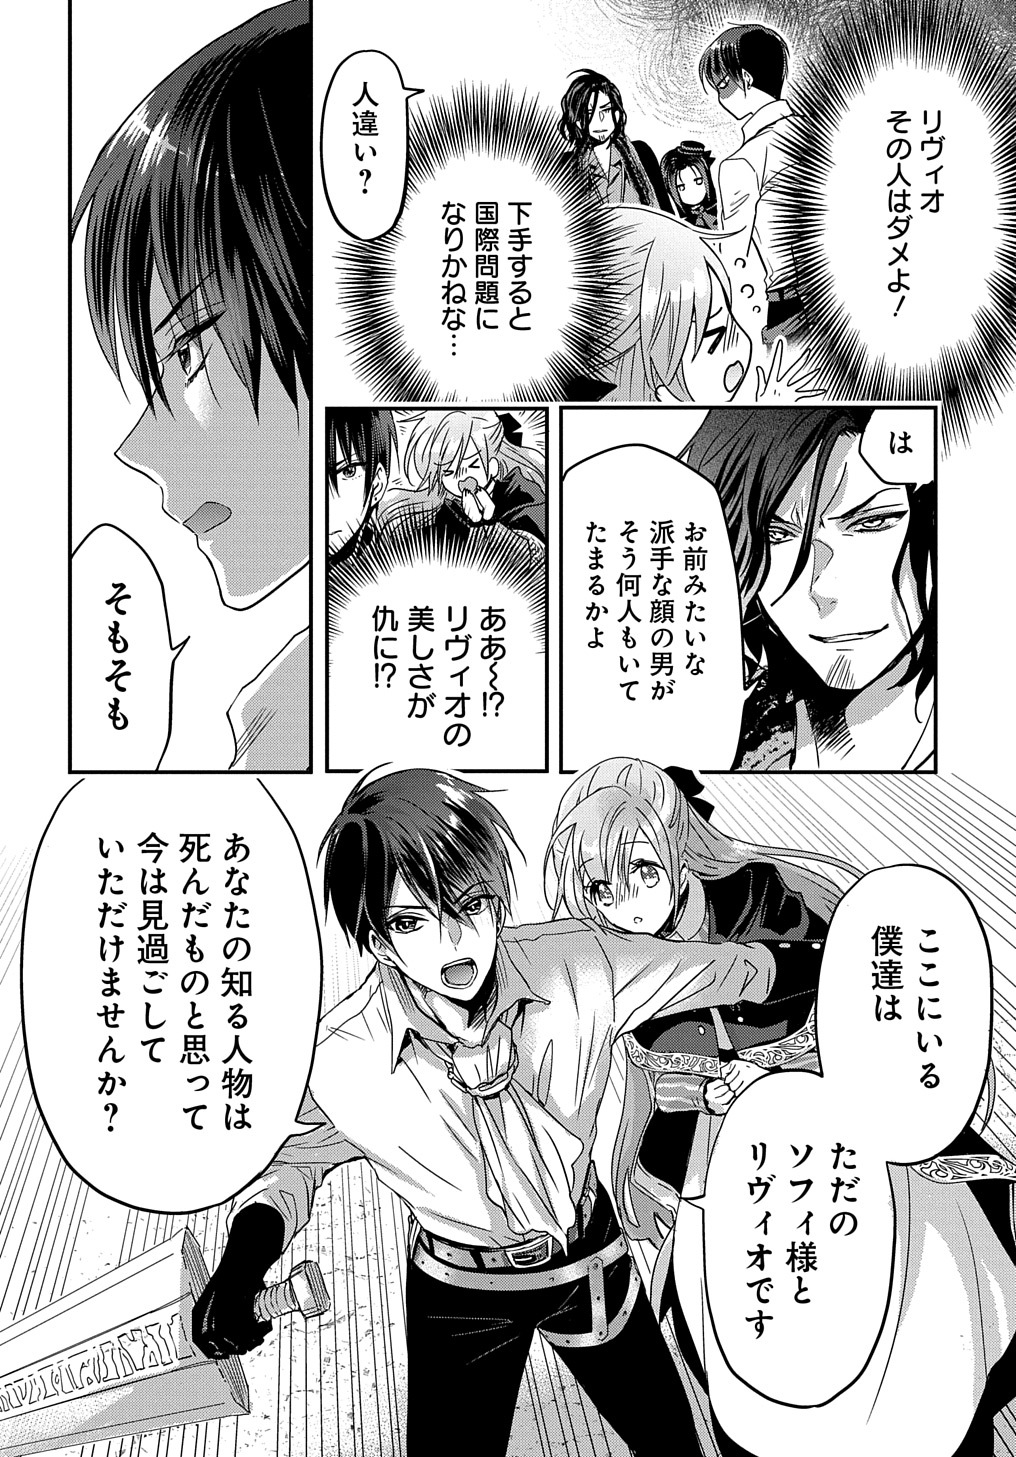 Konyakusha no Uwaki Genba wo Michatta no de Hajimari no Kane ga narimashita - Chapter 8 - Page 6